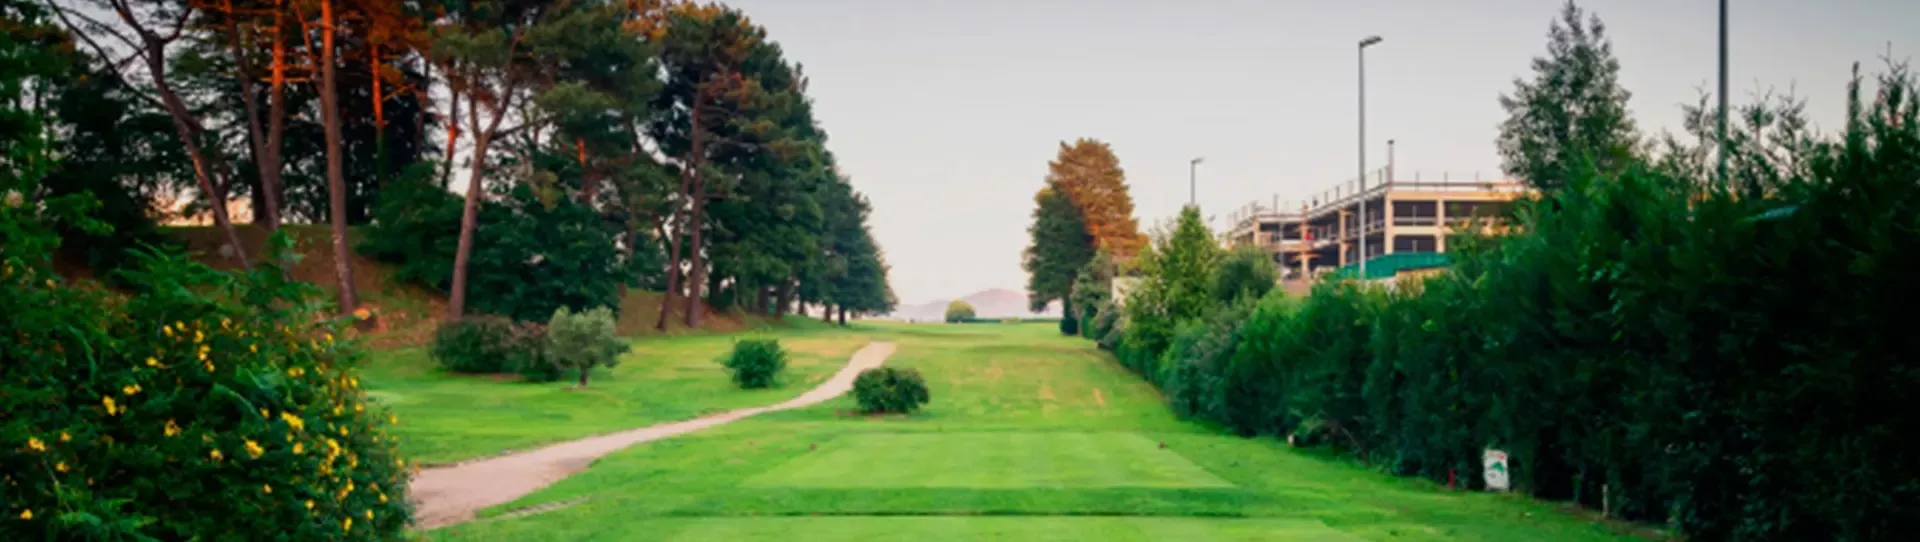 Spain golf courses - Real Aero Club de Vigo Golf Course - Photo 3